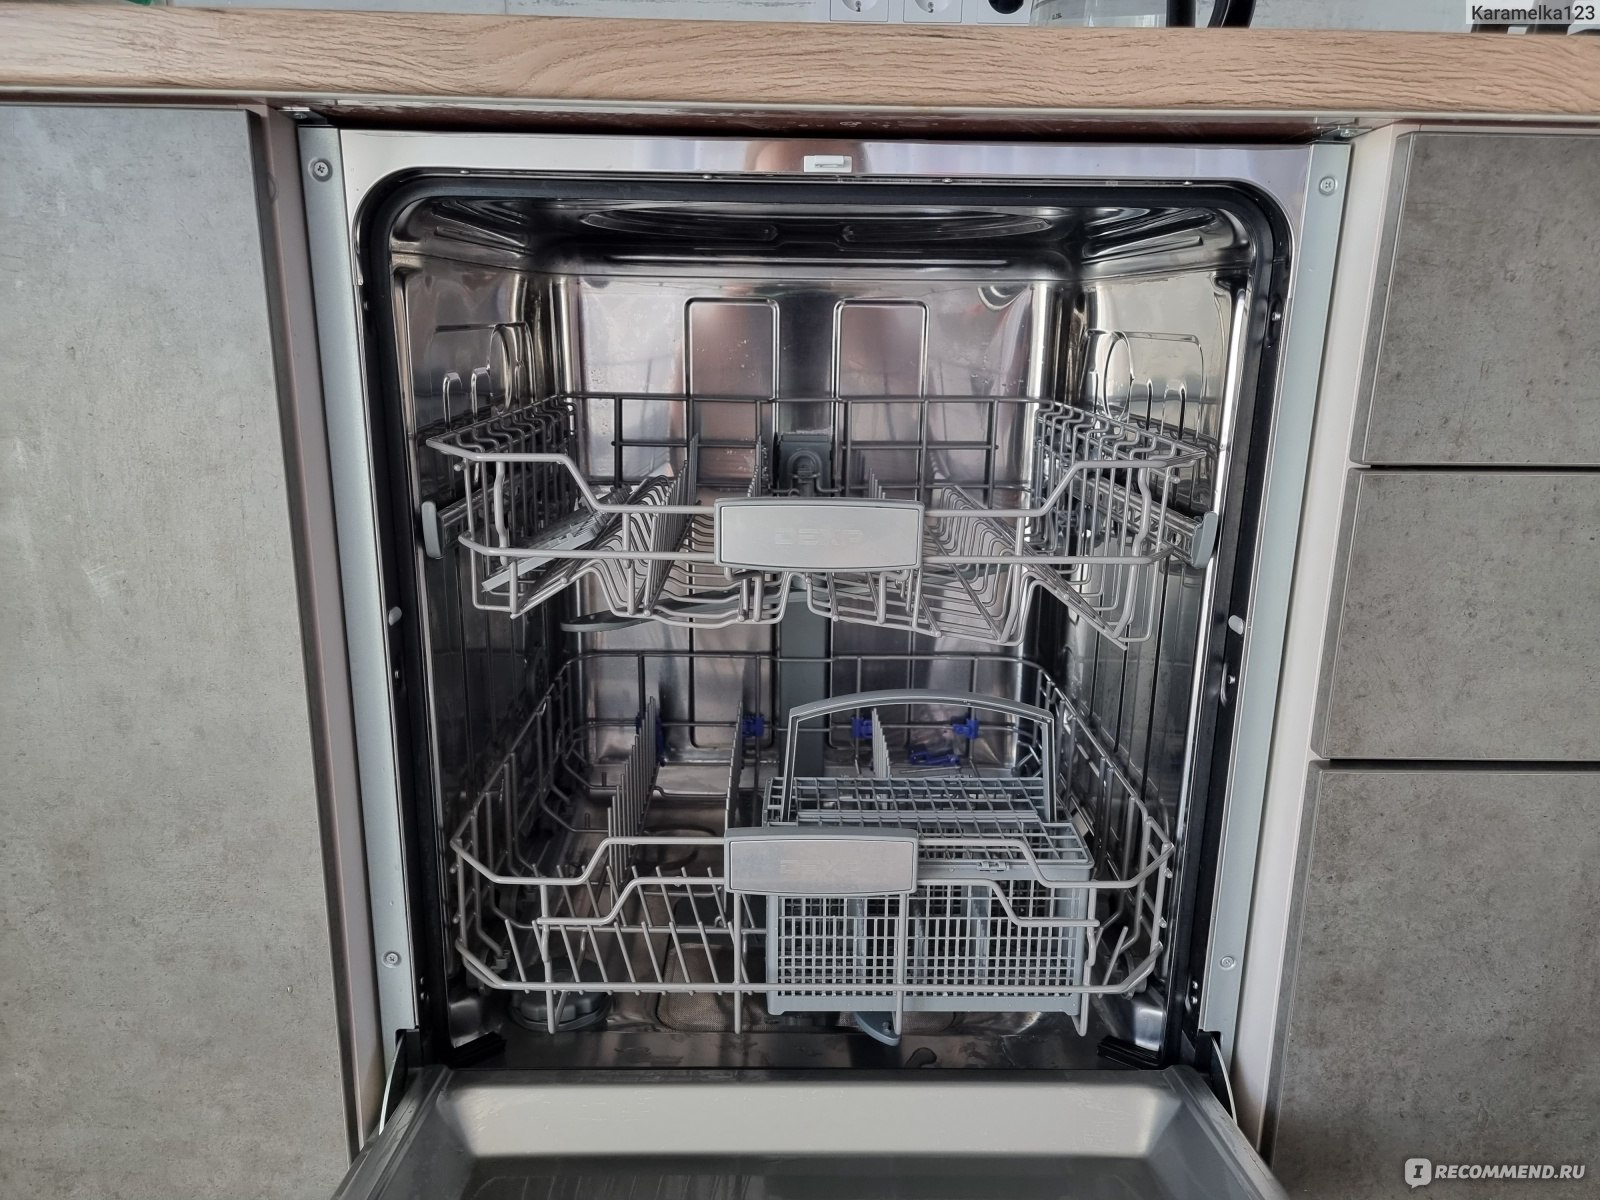 Встроенная посудомоечная машина dexp. Встраиваемая посудомоечная машина 60 см ДНС.